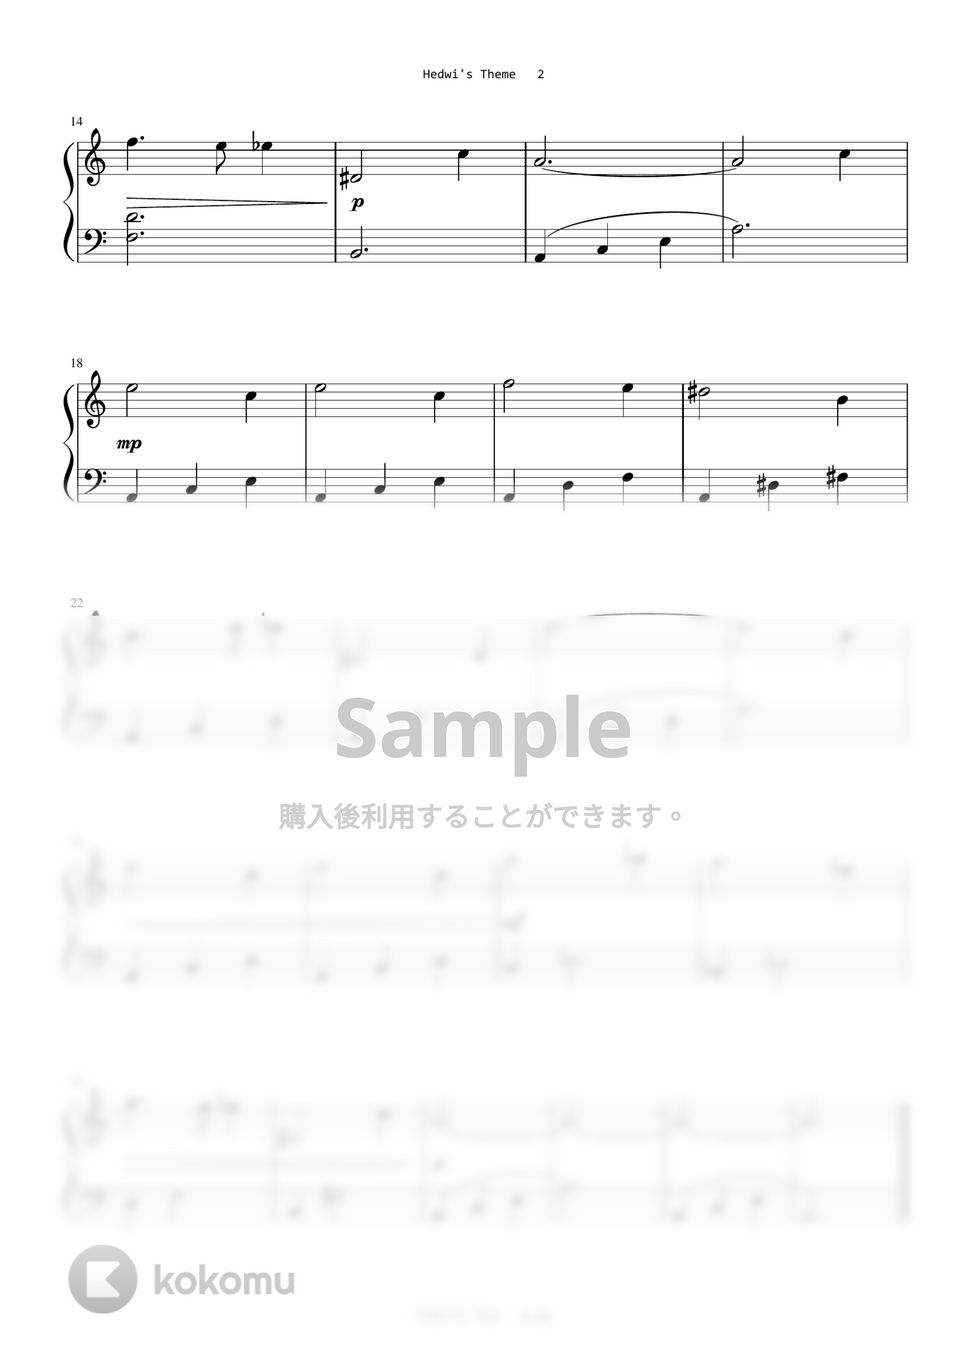 ハリーポッター - Hedwig's Theme (Level 1 - Easy Key(Am Key)) by A.Ha